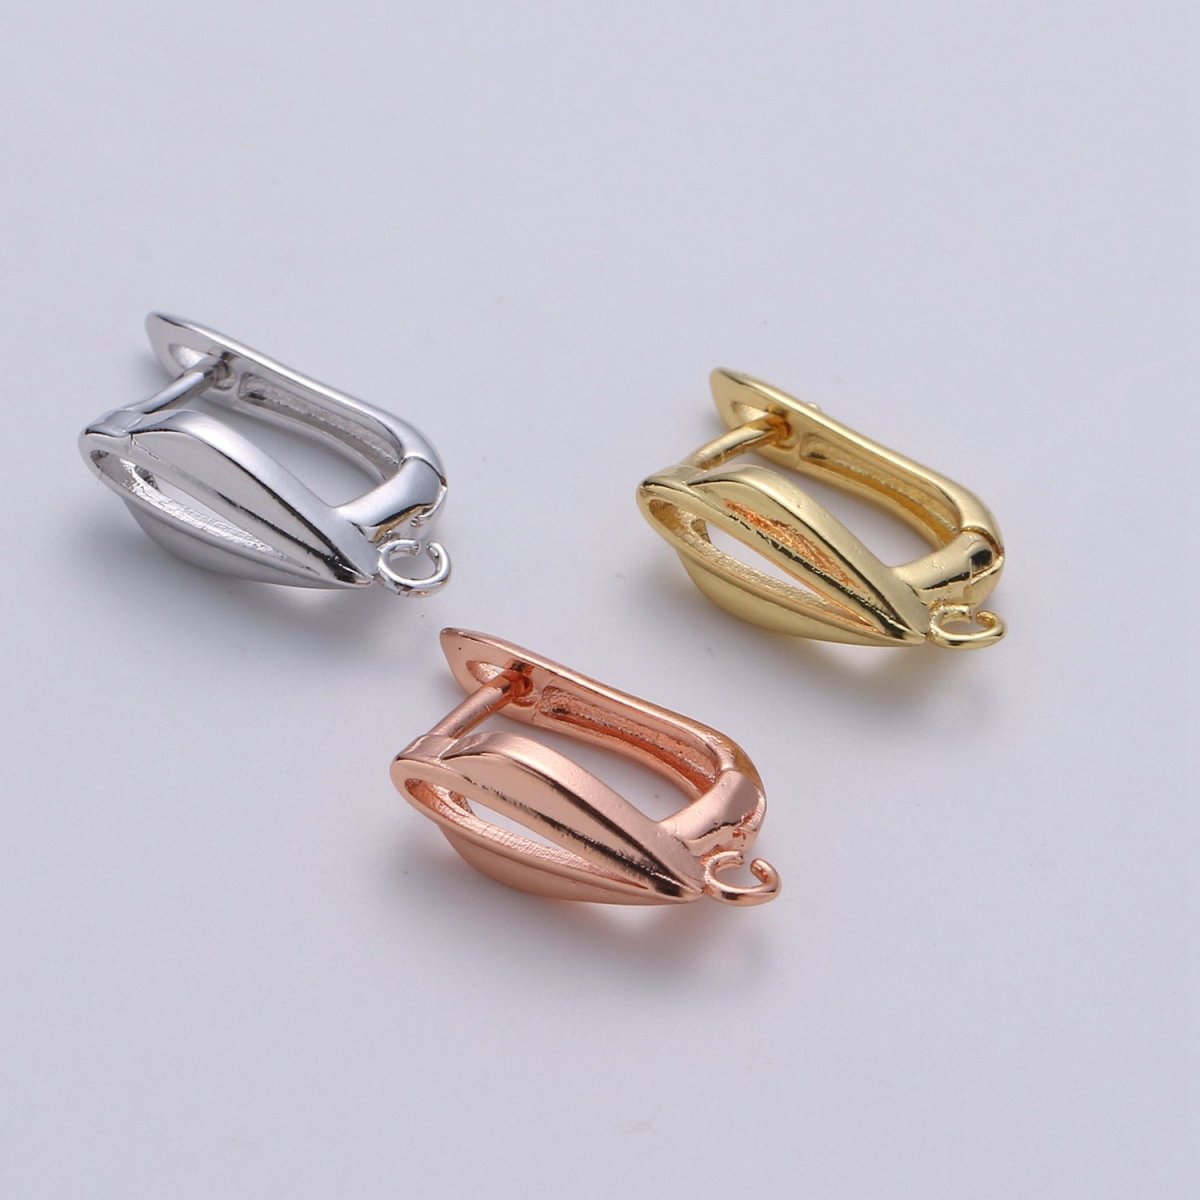 24k Vermeil Gold Earrings, Open Link, Latch Back Earring, Leaf Earrings, DIY Earrings, Everyday Wear Earrings, Rosegold Earring, K-678 - K-680 - DLUXCA